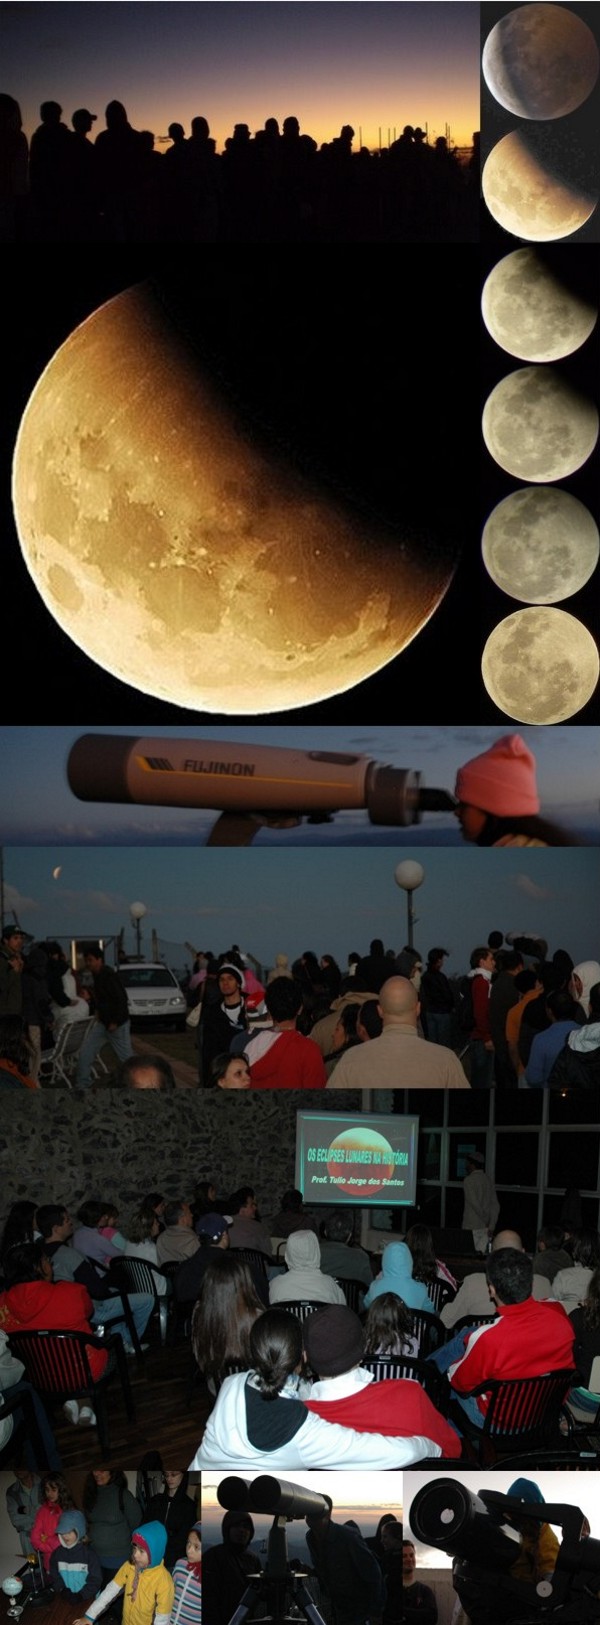 Setembro/08 - Eclipse Lunar - Diversos Autores

        Mais um show da natureza! Ver a Lua nascer eclipsada foi lindo! Quem foi ao “Frei Rosário”, além de observar o eclipse, pôde participar de aulas multimídia; laboratório interativo; observações da Lua; Júpiter; Caixinha de Jóias; etc.
        
        